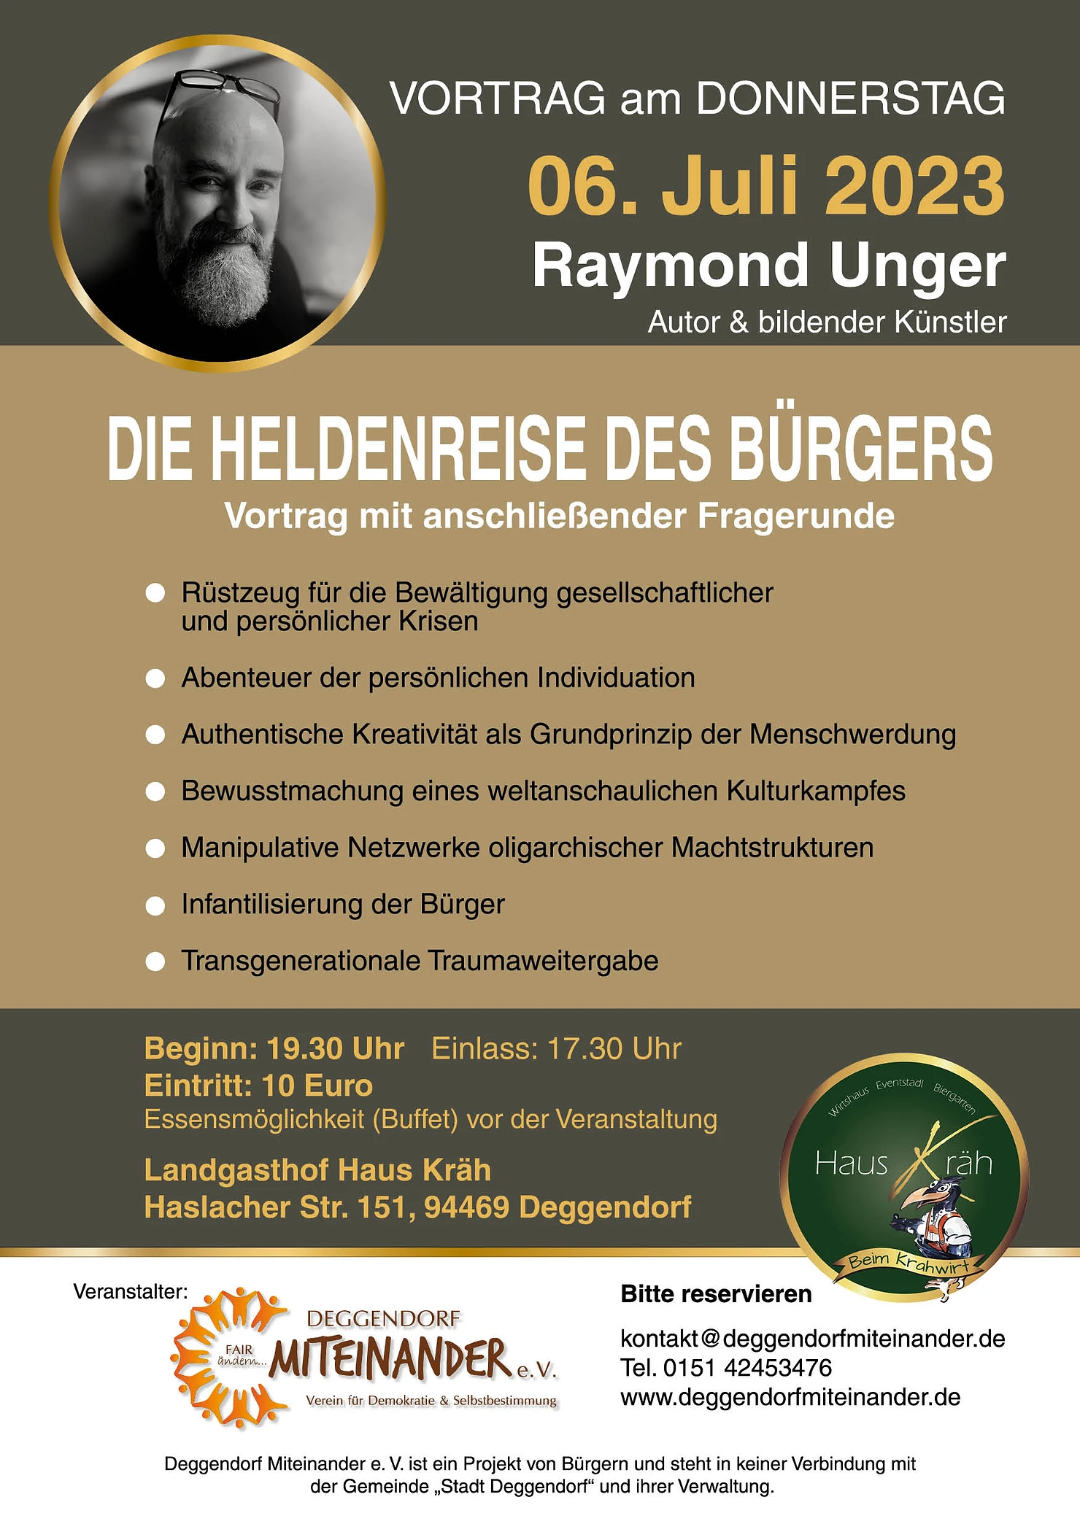 Vortrag Raymond Unger Deggendorf Miteinander